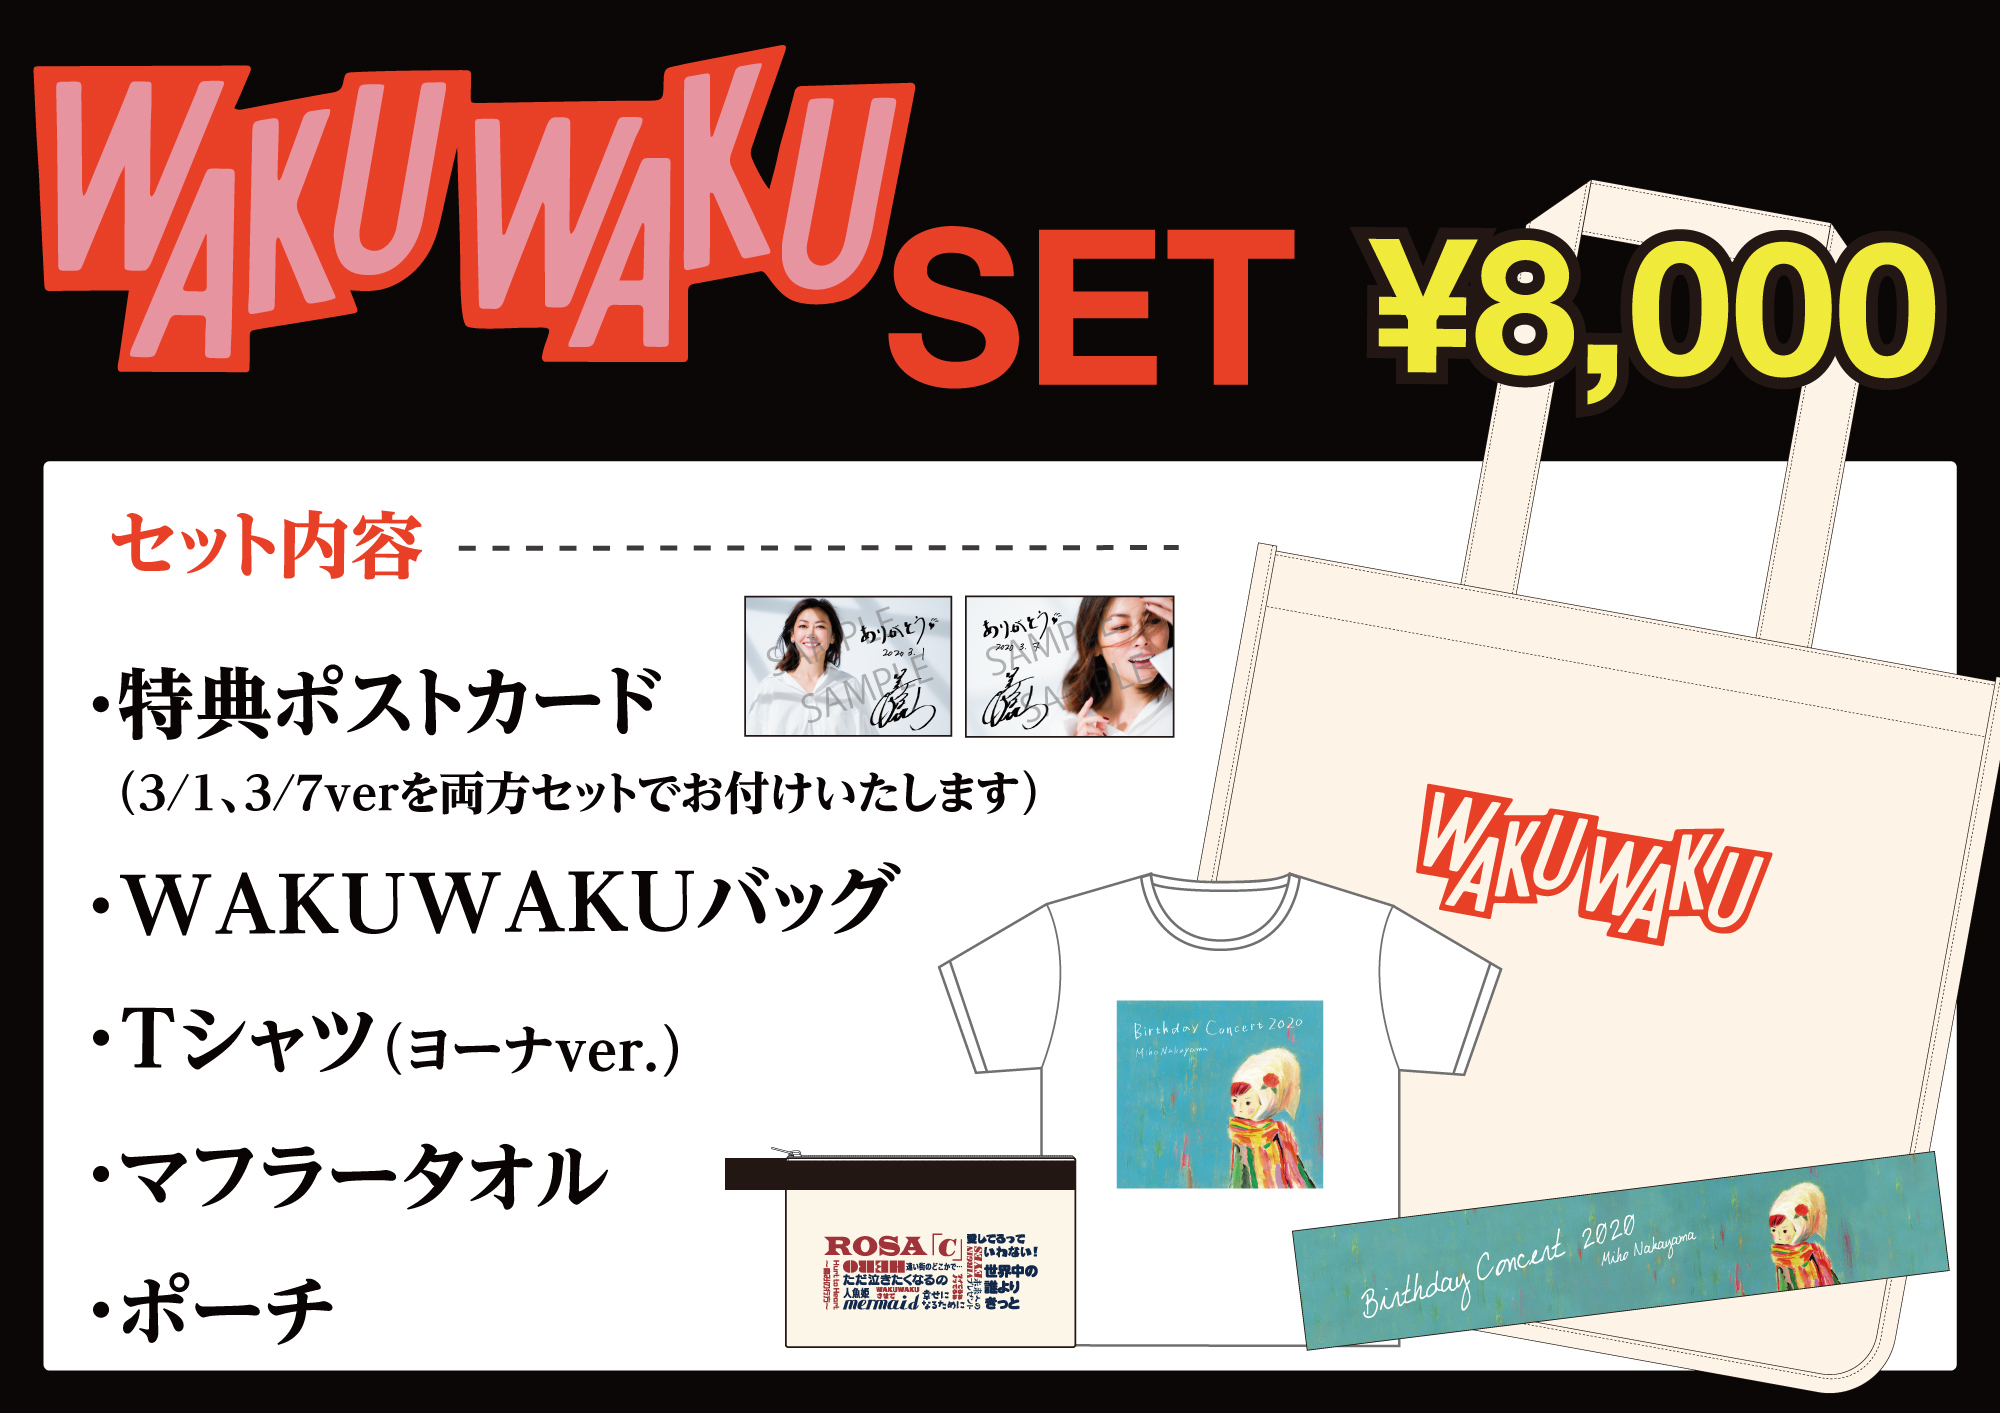 Wakuwakuセット 販売のお知らせ Miho Nakayama Official